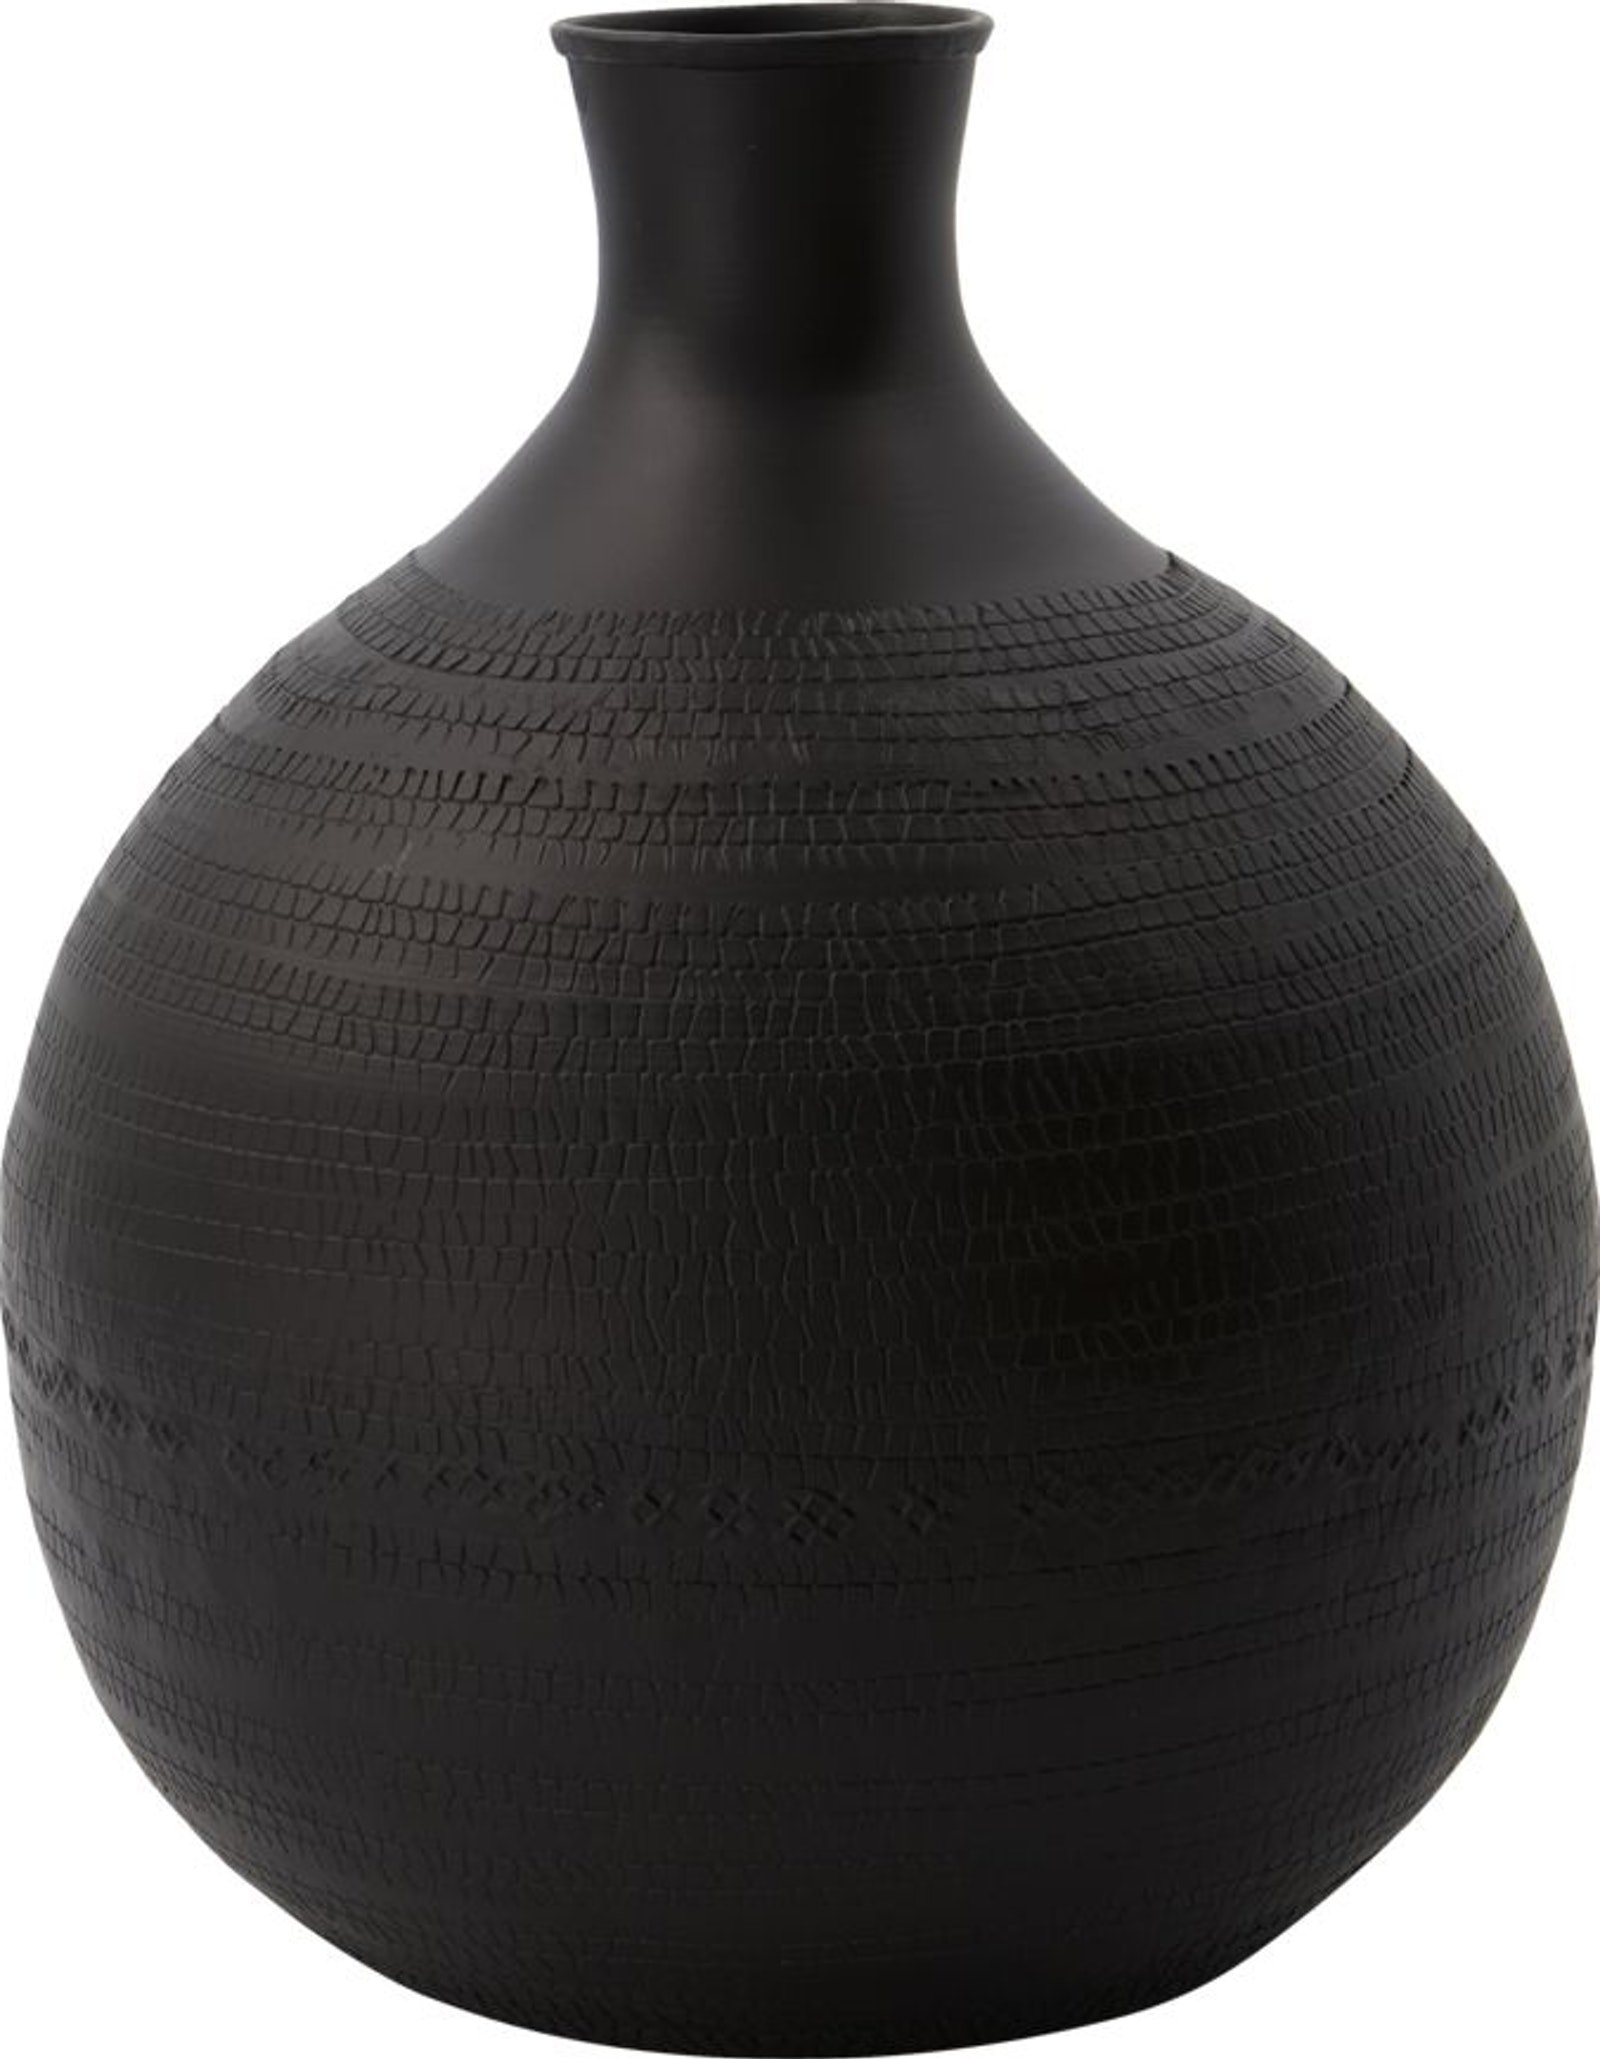 På billedet ser du variationen Reena, Vase fra brandet House Doctor i en størrelse D: 20 cm. x H: 25 cm. i farven Brun